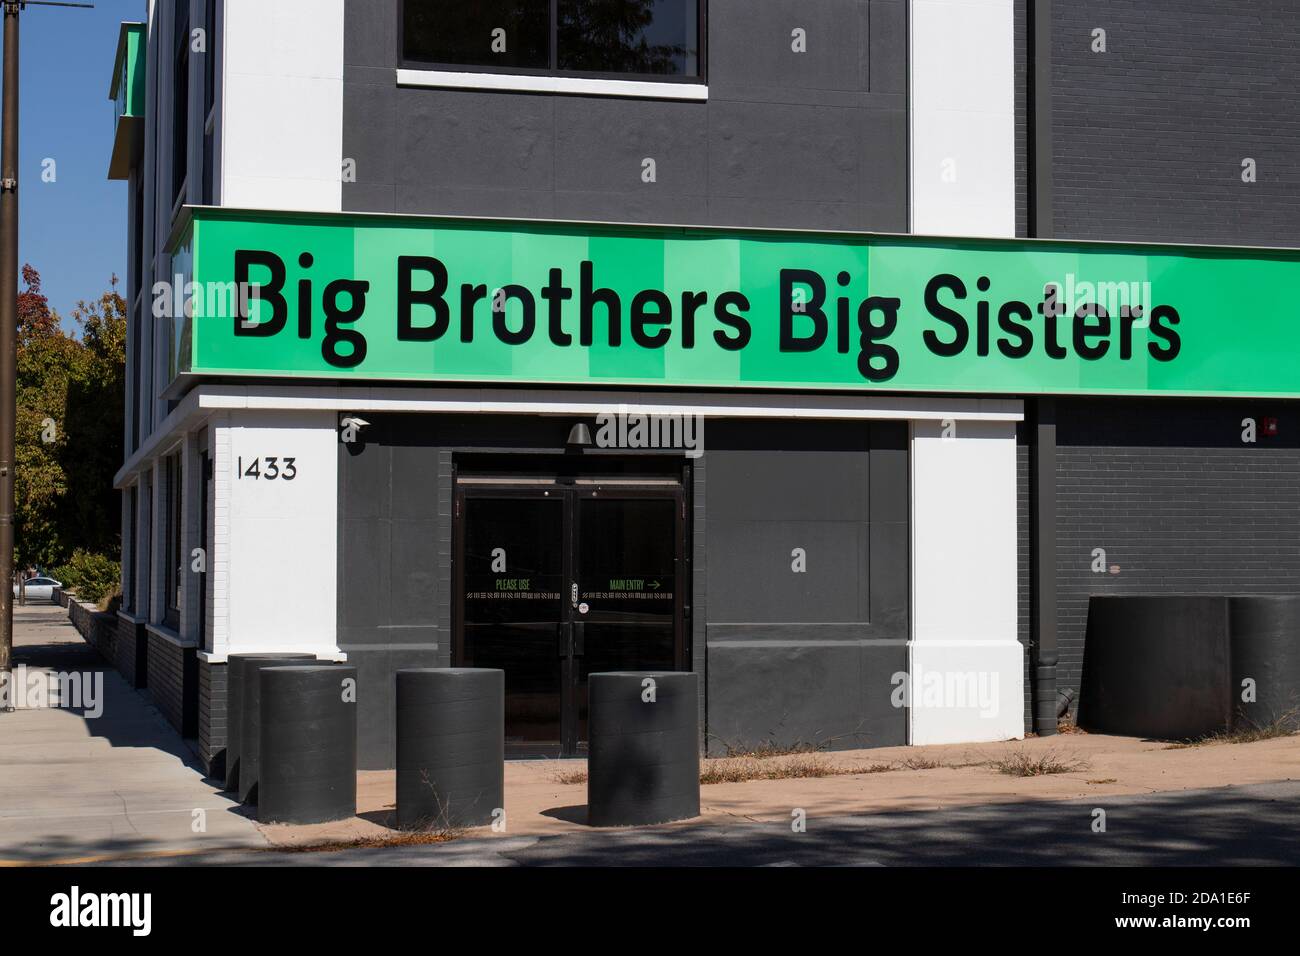 Indianapolis - ca. Oktober 2020: Big Brothers Big Sisters of America Location. Big Brothers Big Sisters bietet Mentoren für gefährdete Jugendliche. Stockfoto